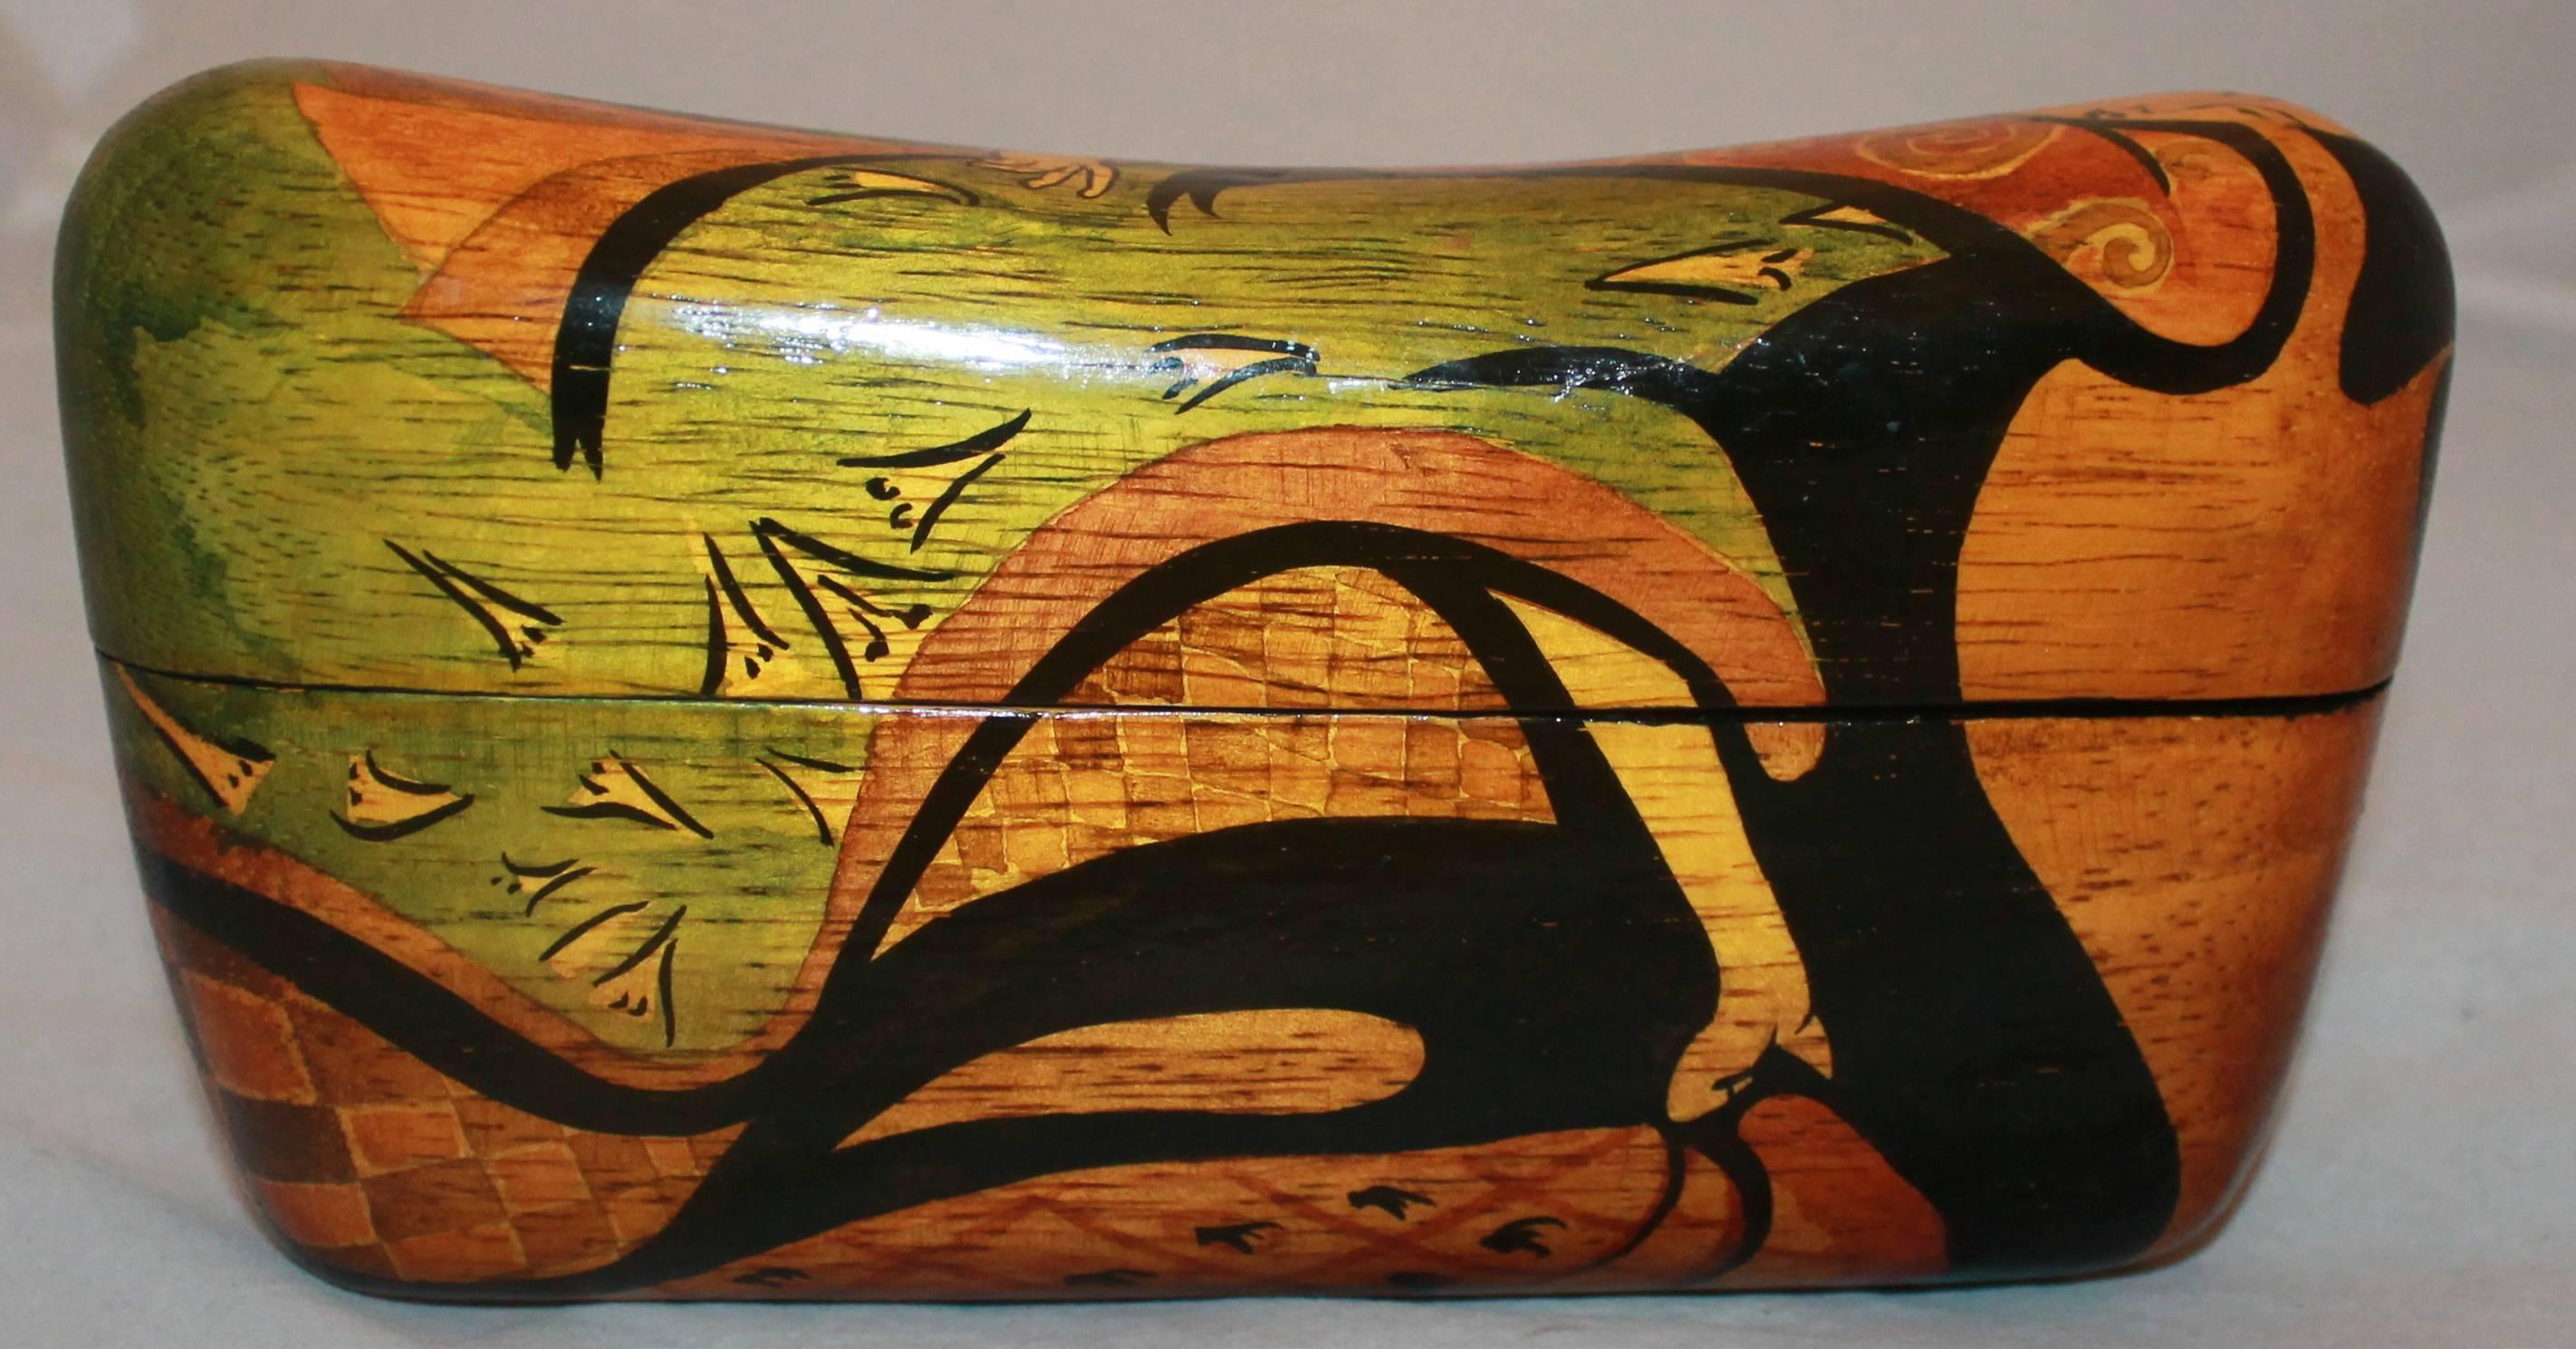 Pochette en bois Rafael Sanchez avec un motif peint abstrait et une boucle à pompon noire.  Cette pochette unique en bois est en excellent état.  Il est orné d'une peinture abstraite d'une femme asiatique et d'une fermeture à gland noir pour le